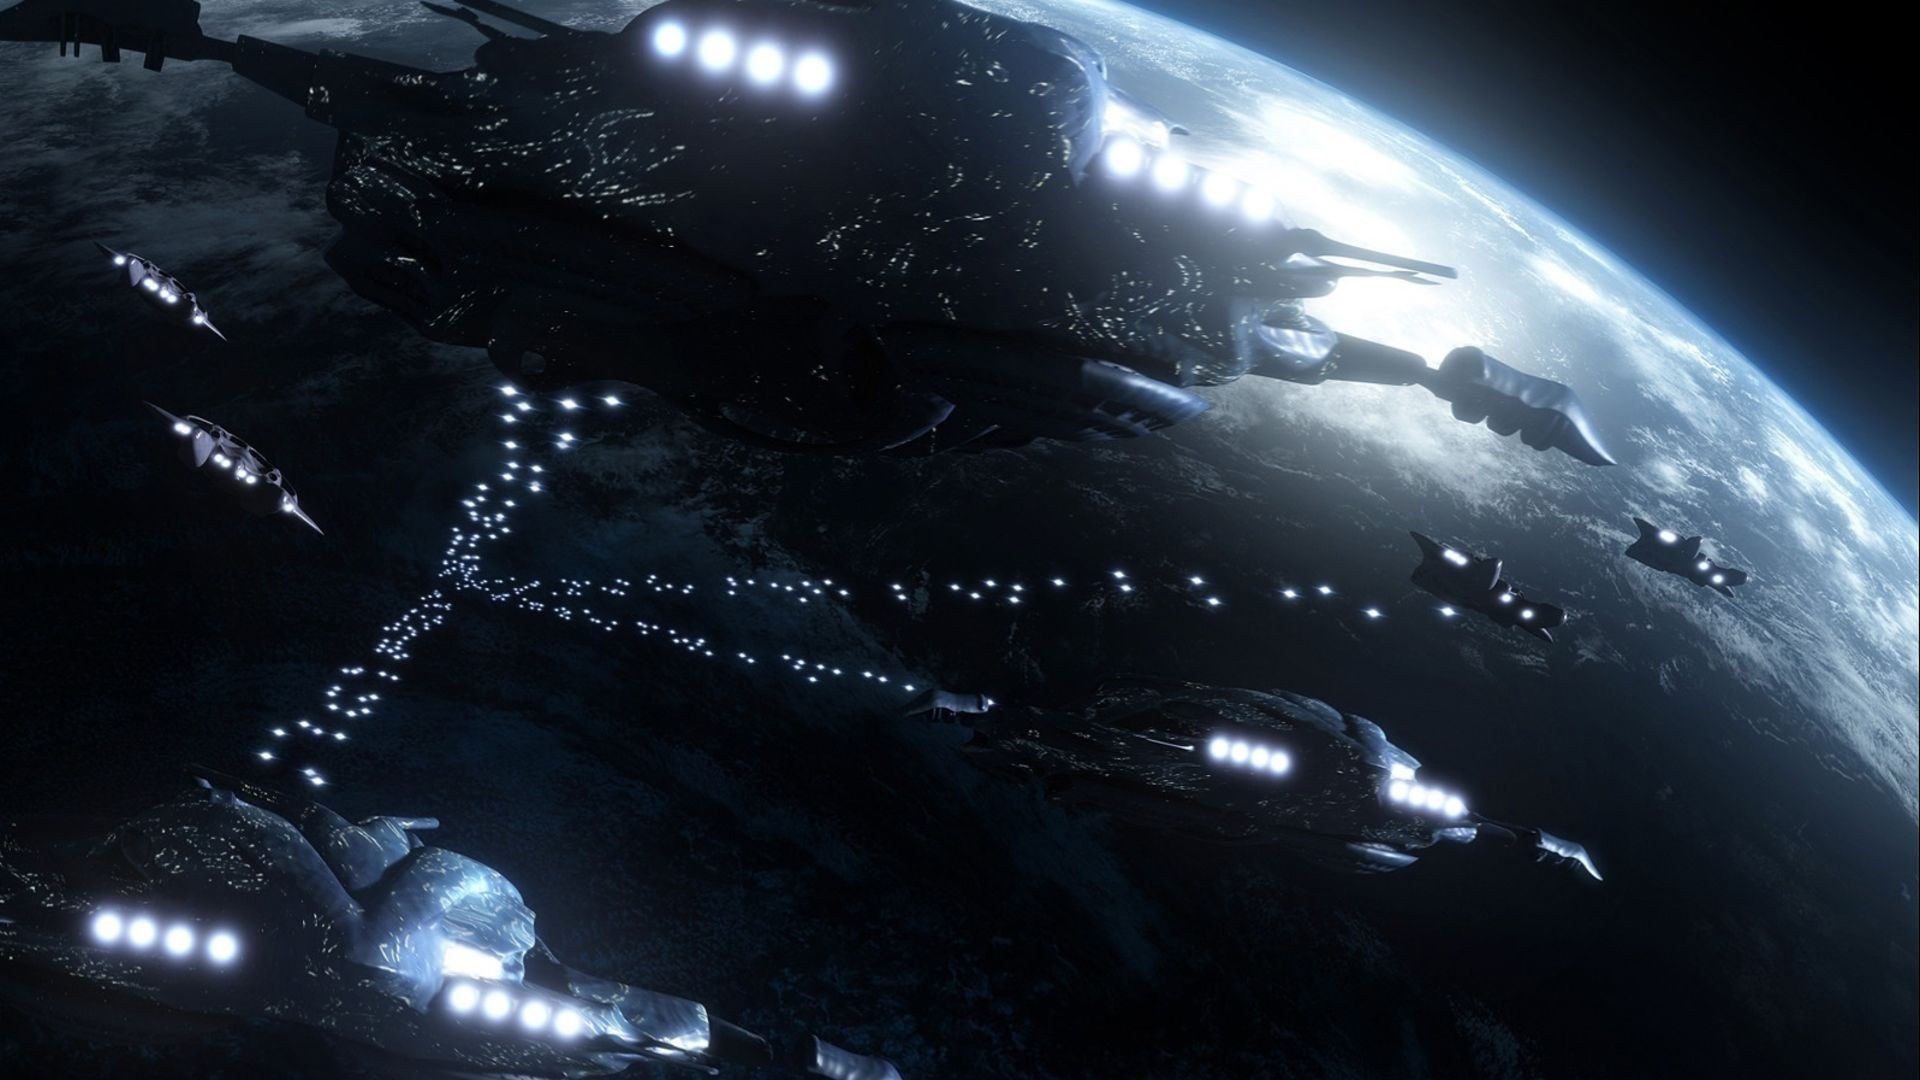 Bạn là fan của series phim khoa học viễn tưởng? Hãy xem ngay hình ảnh liên quan đến Stargate Atlantis. Chìm đắm trong không gian vô tận và tìm hiểu về những câu chuyện kỳ thú về những chuyến phiêu lưu đầy mạo hiểm.